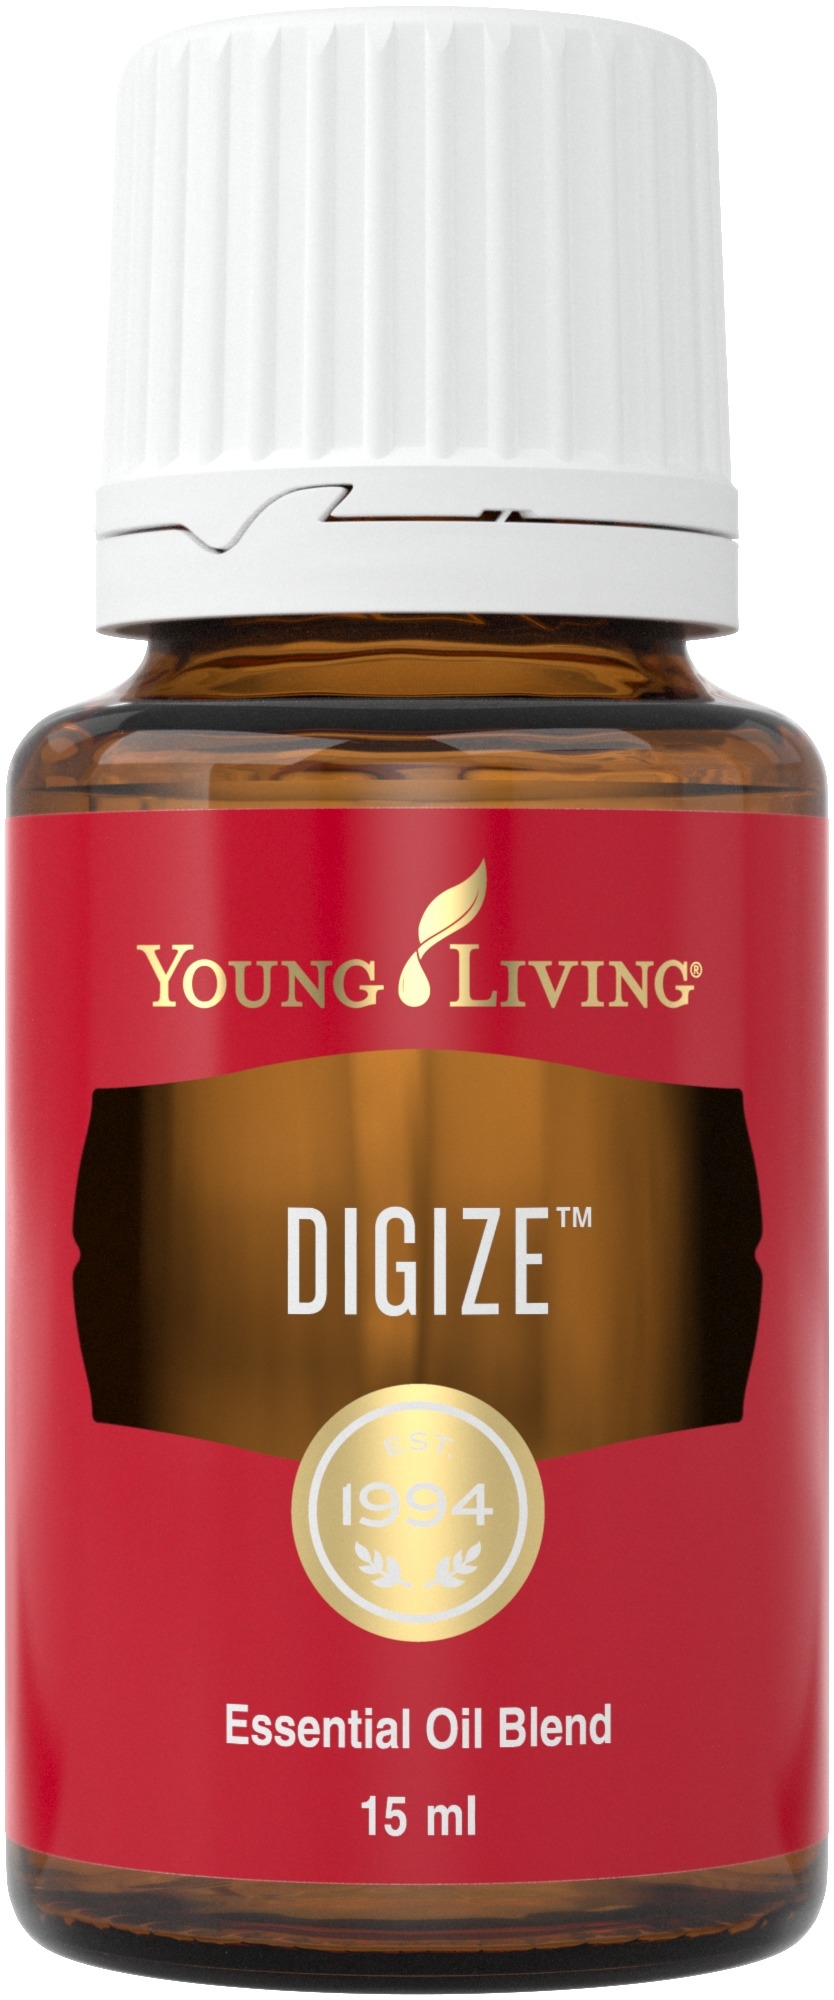 DiGize essential oil blend